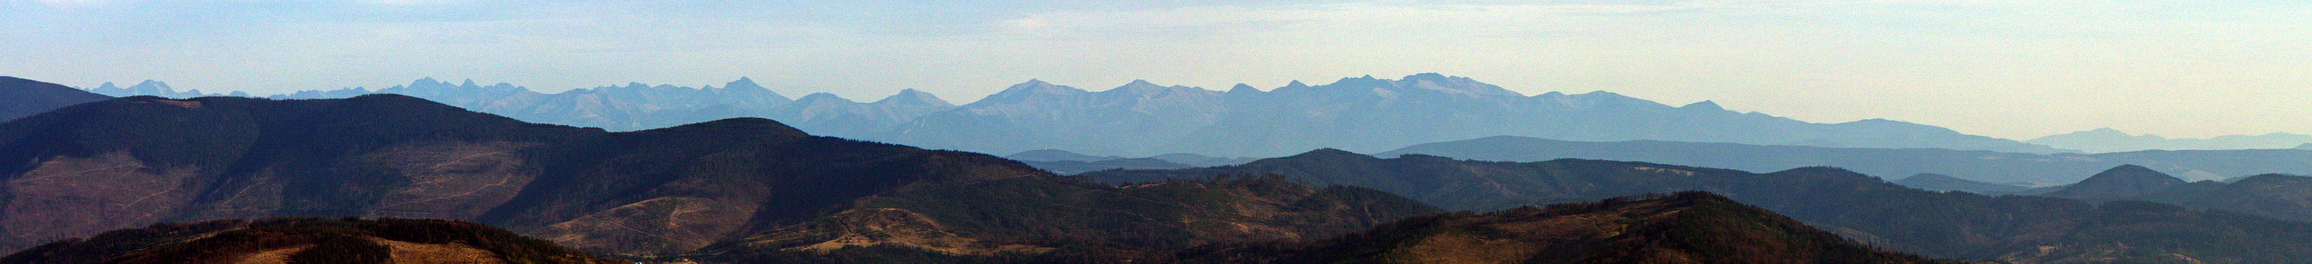 Gigapanorama Tatr z Baraniej Góry